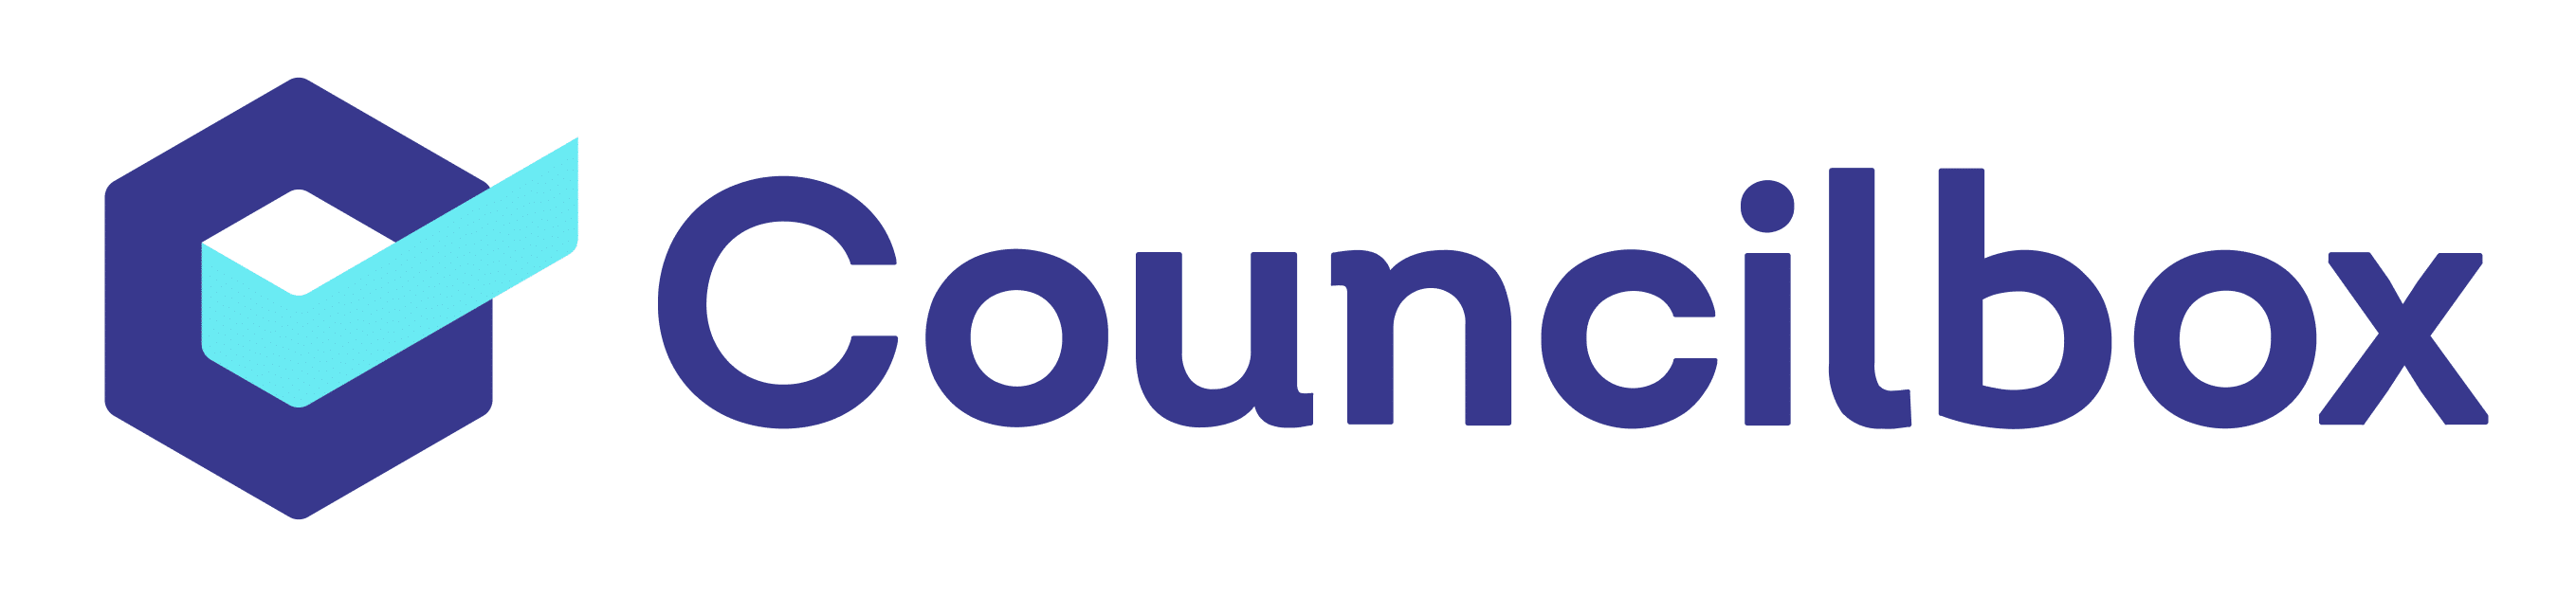 Councilbox Logotipo